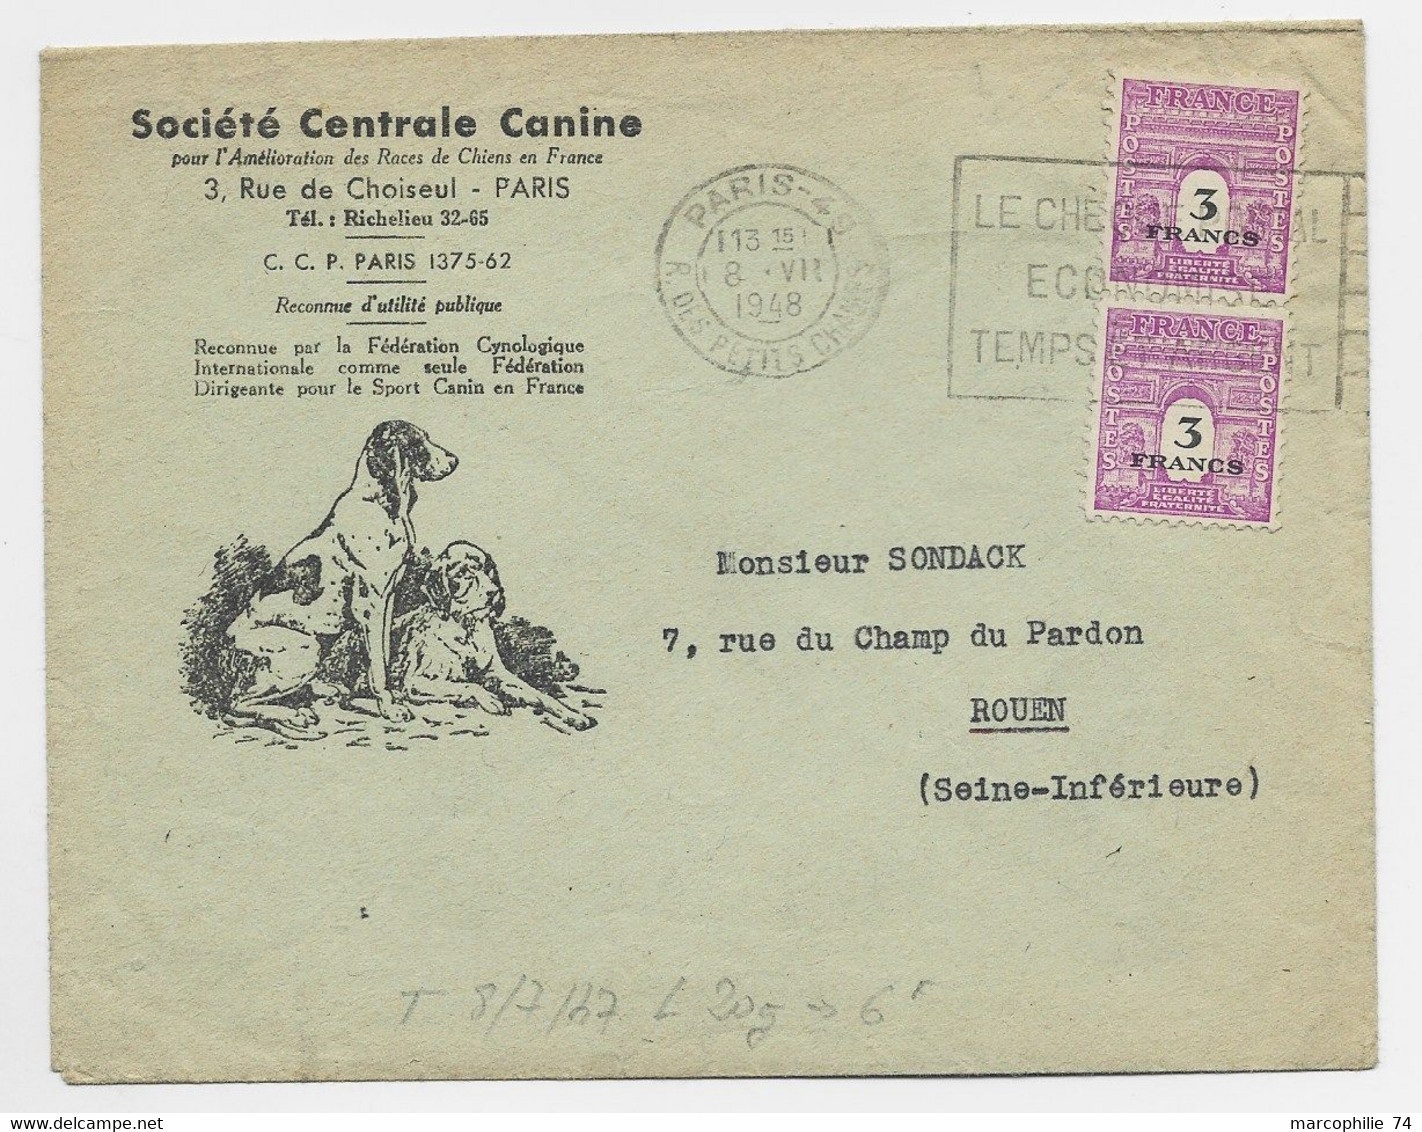 ARC TRIOMPHE 3FR PAIRE LETTRE ENTETE SOCIETE CENTRALE CANINE PARIS 8.VII .1948 AU TARIF - 1944-45 Arc De Triomphe